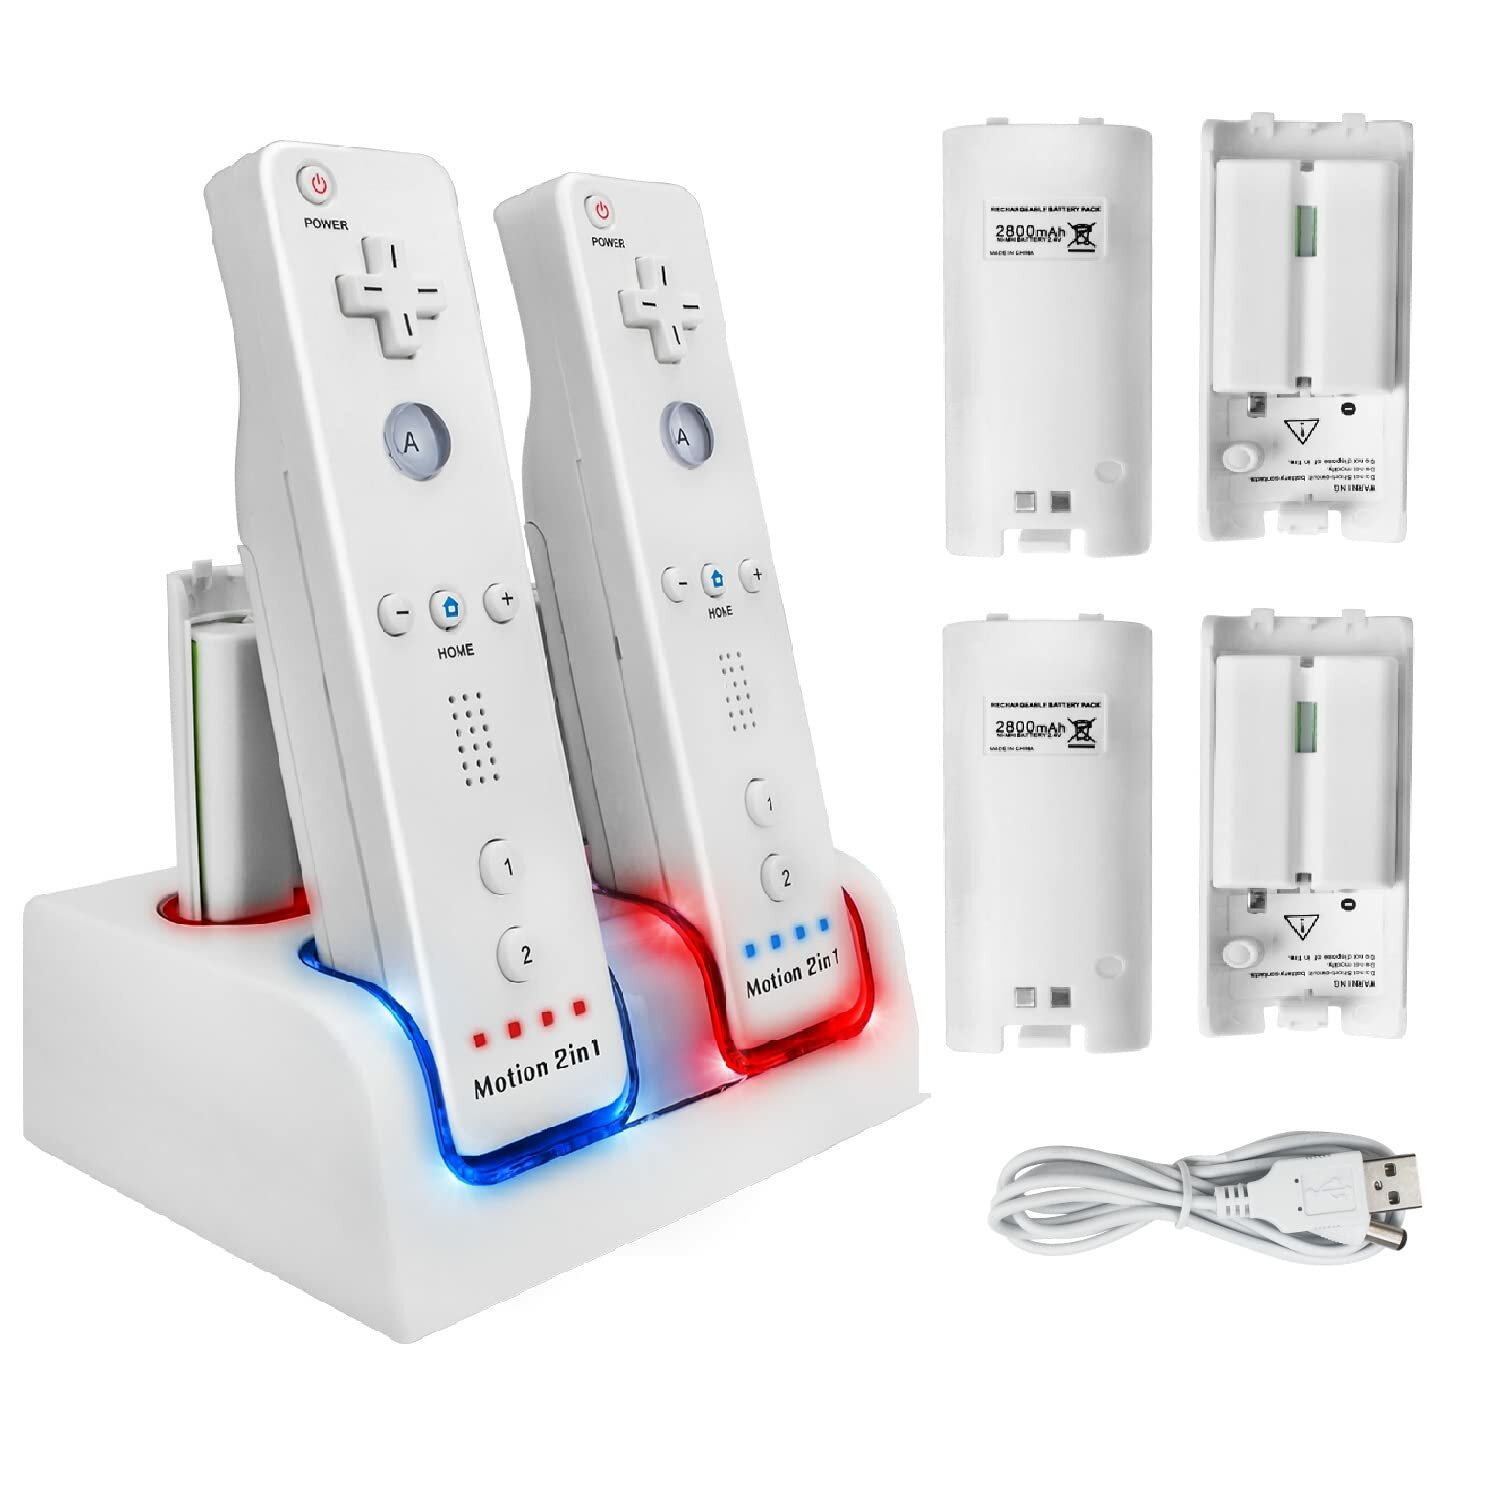 Зарядная станция Charge Dock 4-портовое зарядное устройство для пульта дистанционного управления Wii с 4 аккумуляторами емкостью 2800 мАч